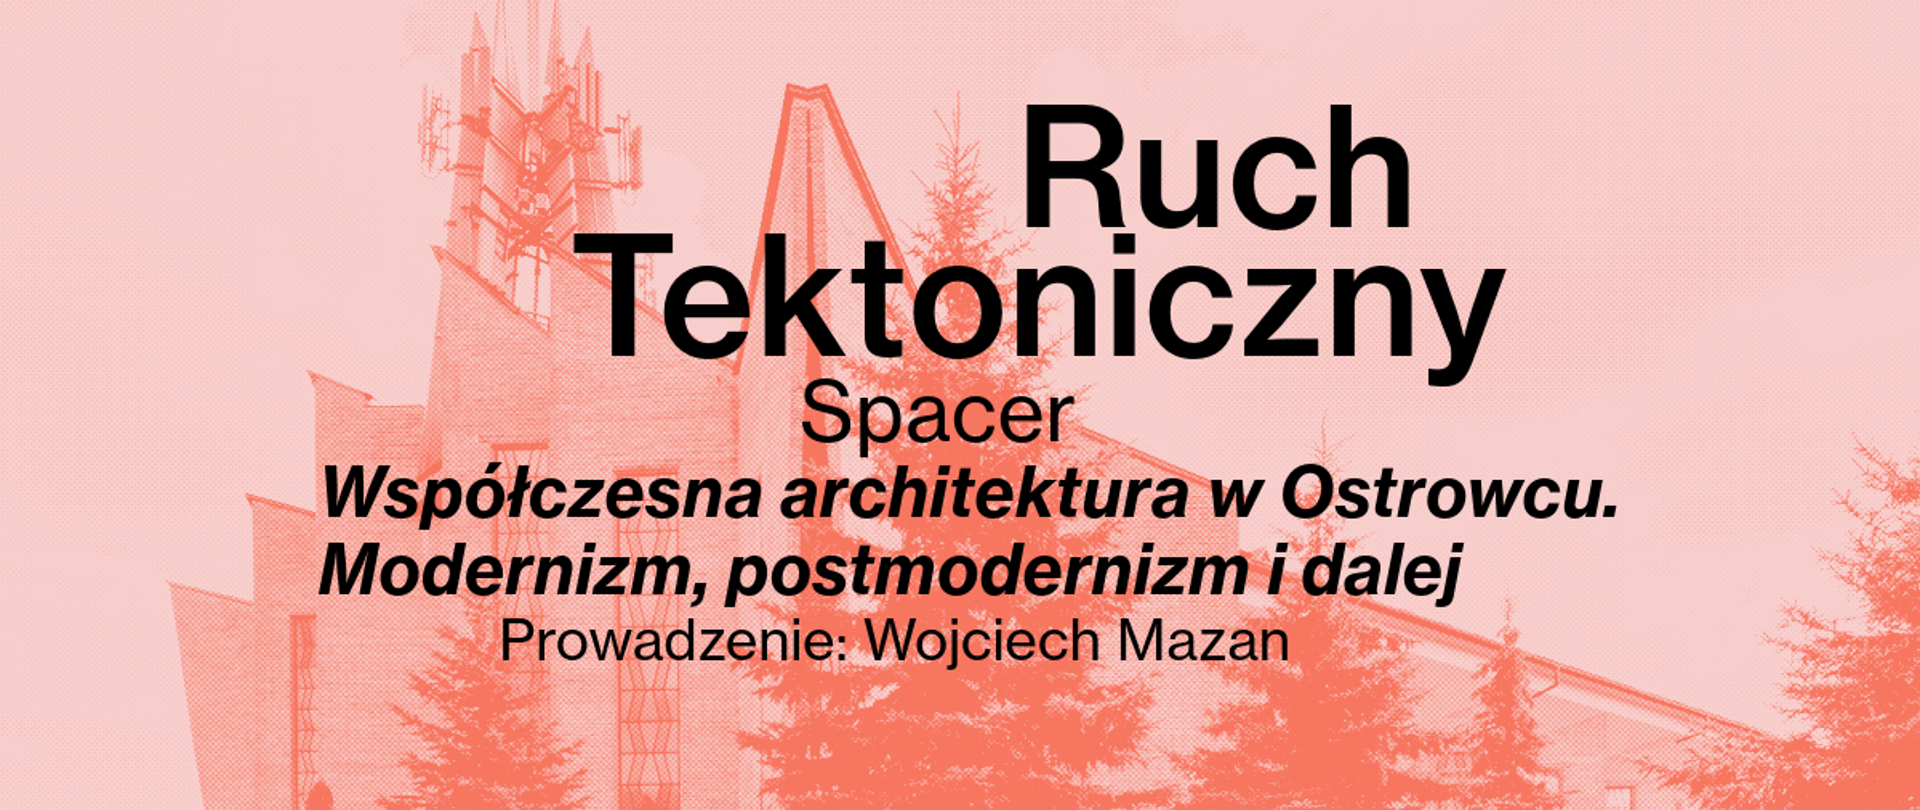 Spacer architektoniczny "Współczesna architektura w Ostrowcu. Modernizm, postmodernizm i dalej"